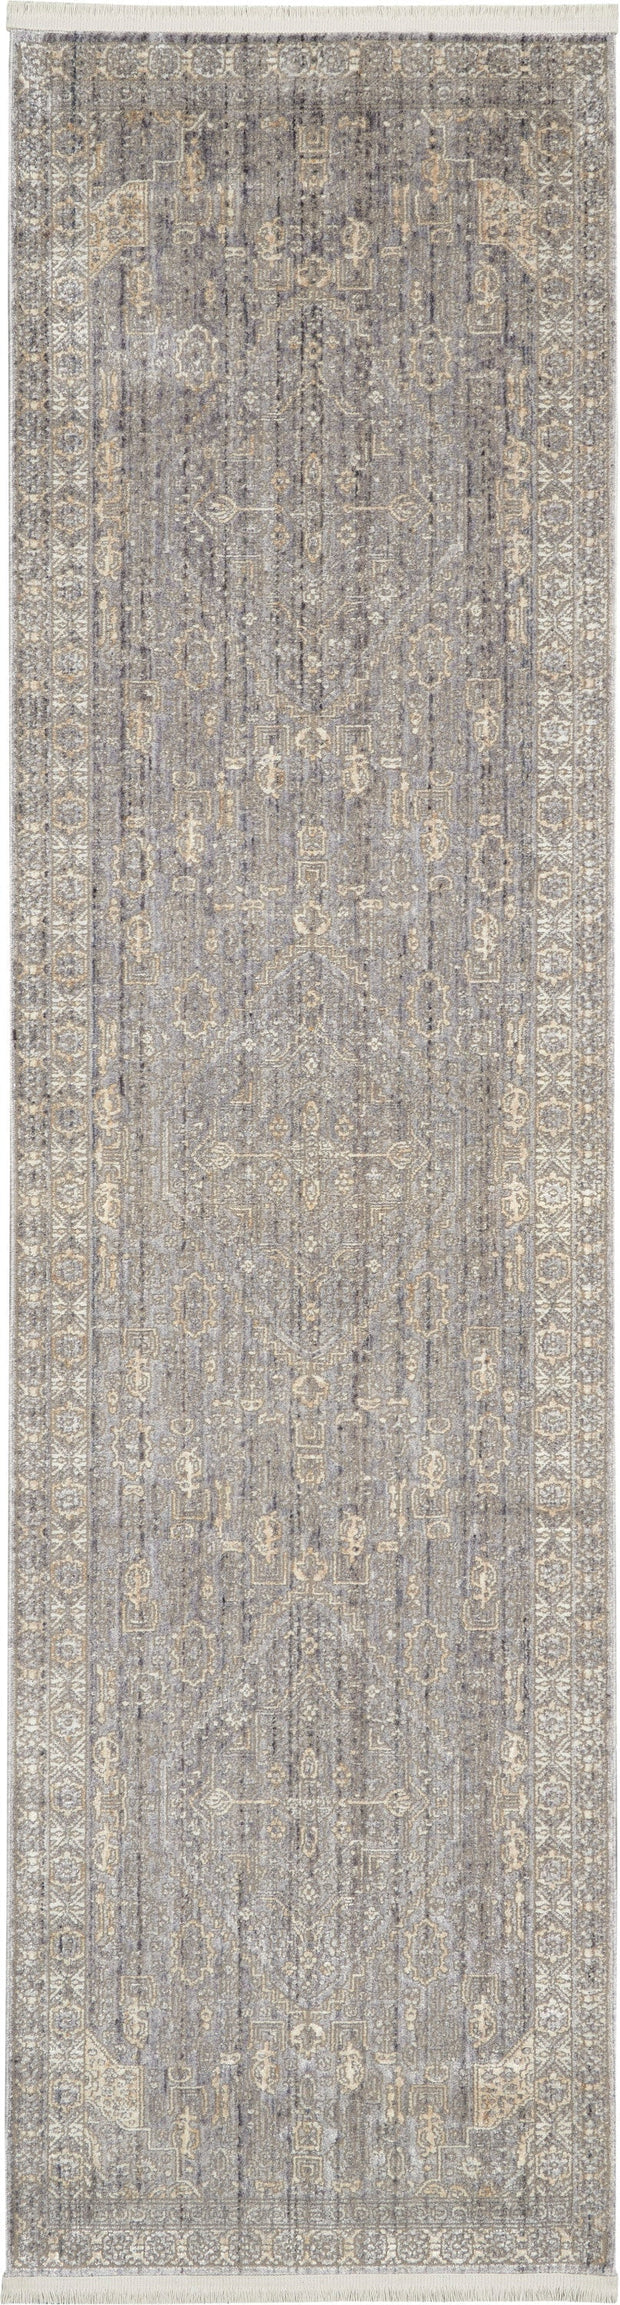 lustrous weave grey beige rug by nourison 99446751966 redo 2